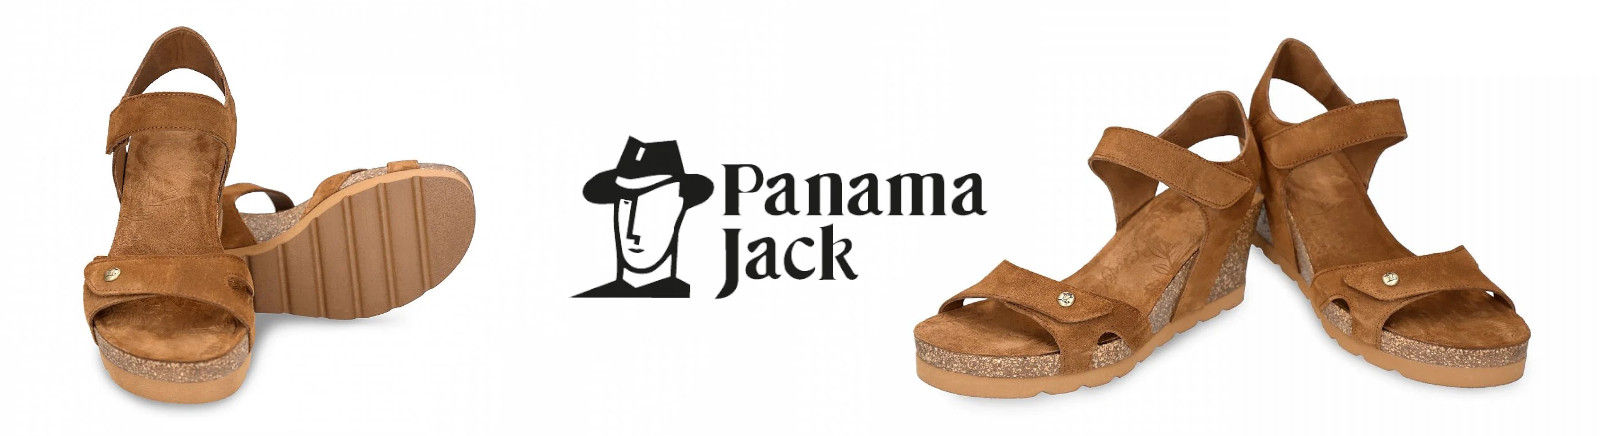 Panama Jack Pantoletten für Damen im Online-Shop von GISY kaufen